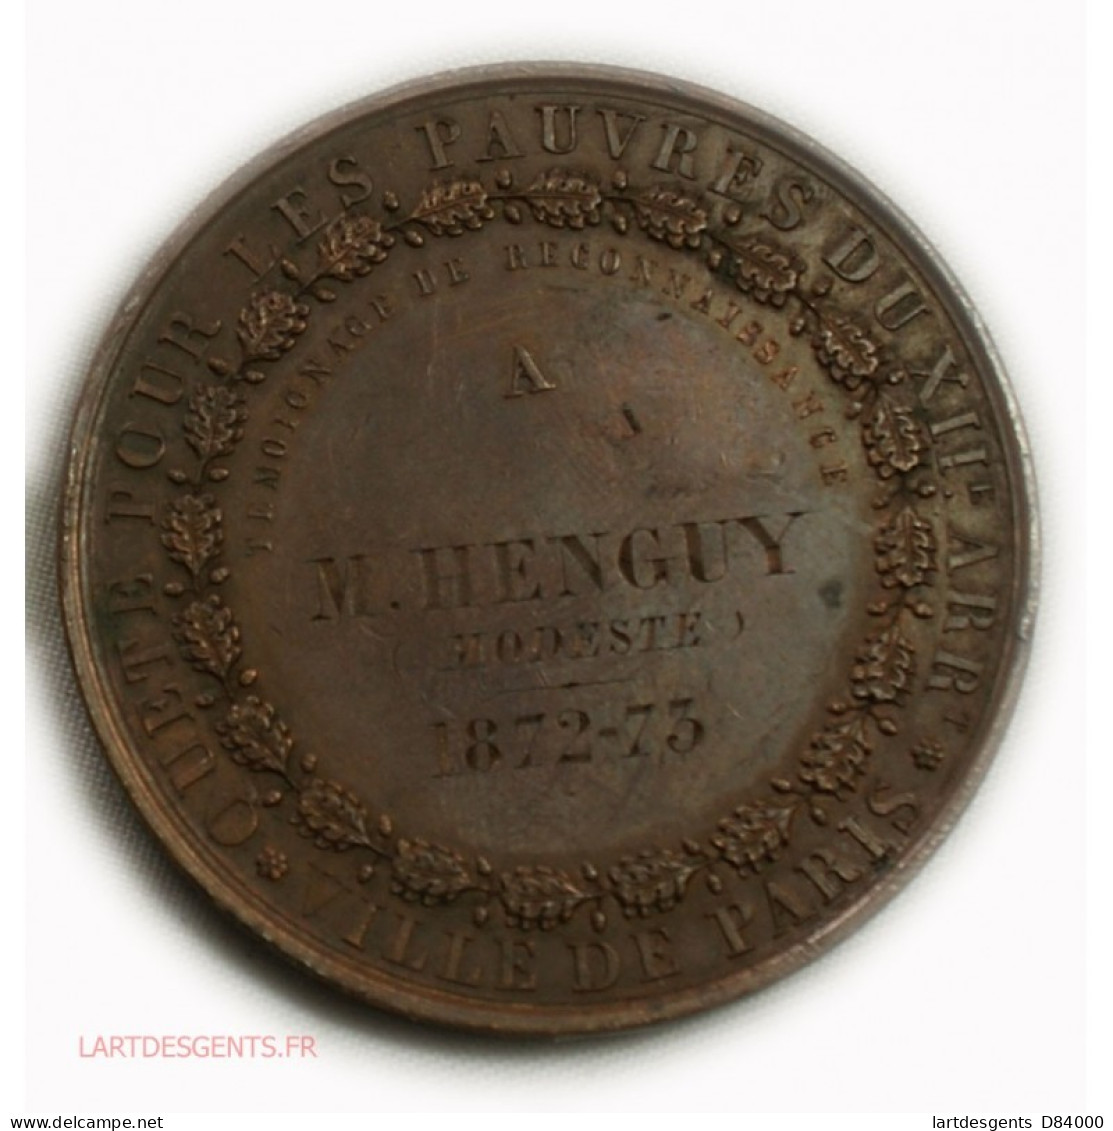 Médaille Quête Pour Les Pauvres 2ème Arrond. Paris 1872-73, Lartdesgents - Royal / Of Nobility